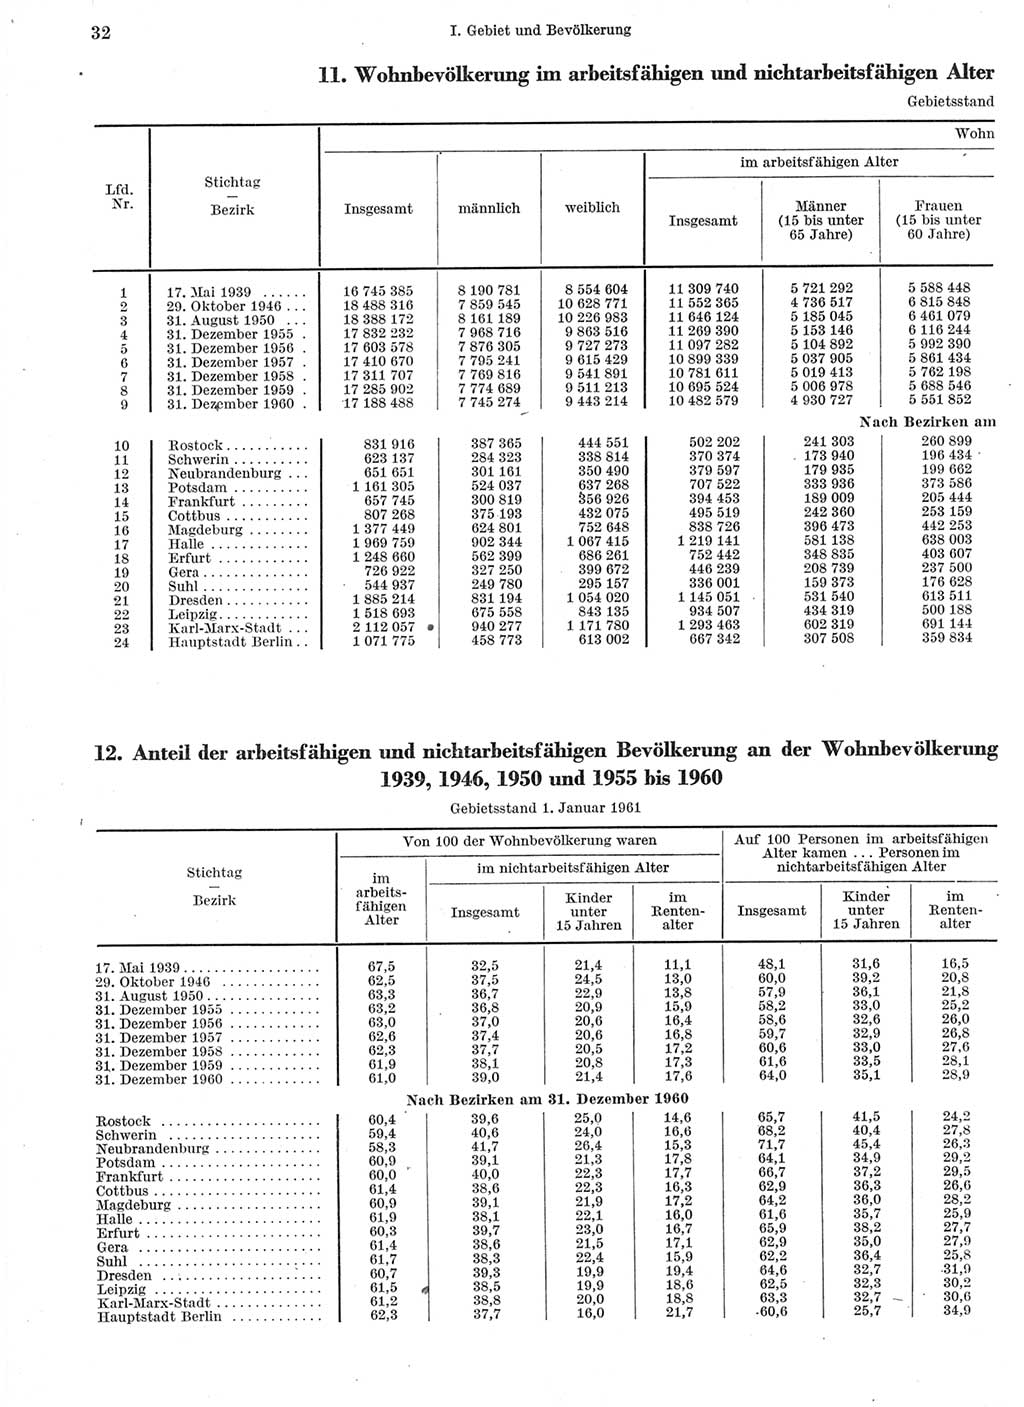 Statistisches Jahrbuch der Deutschen Demokratischen Republik (DDR) 1960-1961, Seite 32 (Stat. Jb. DDR 1960-1961, S. 32)